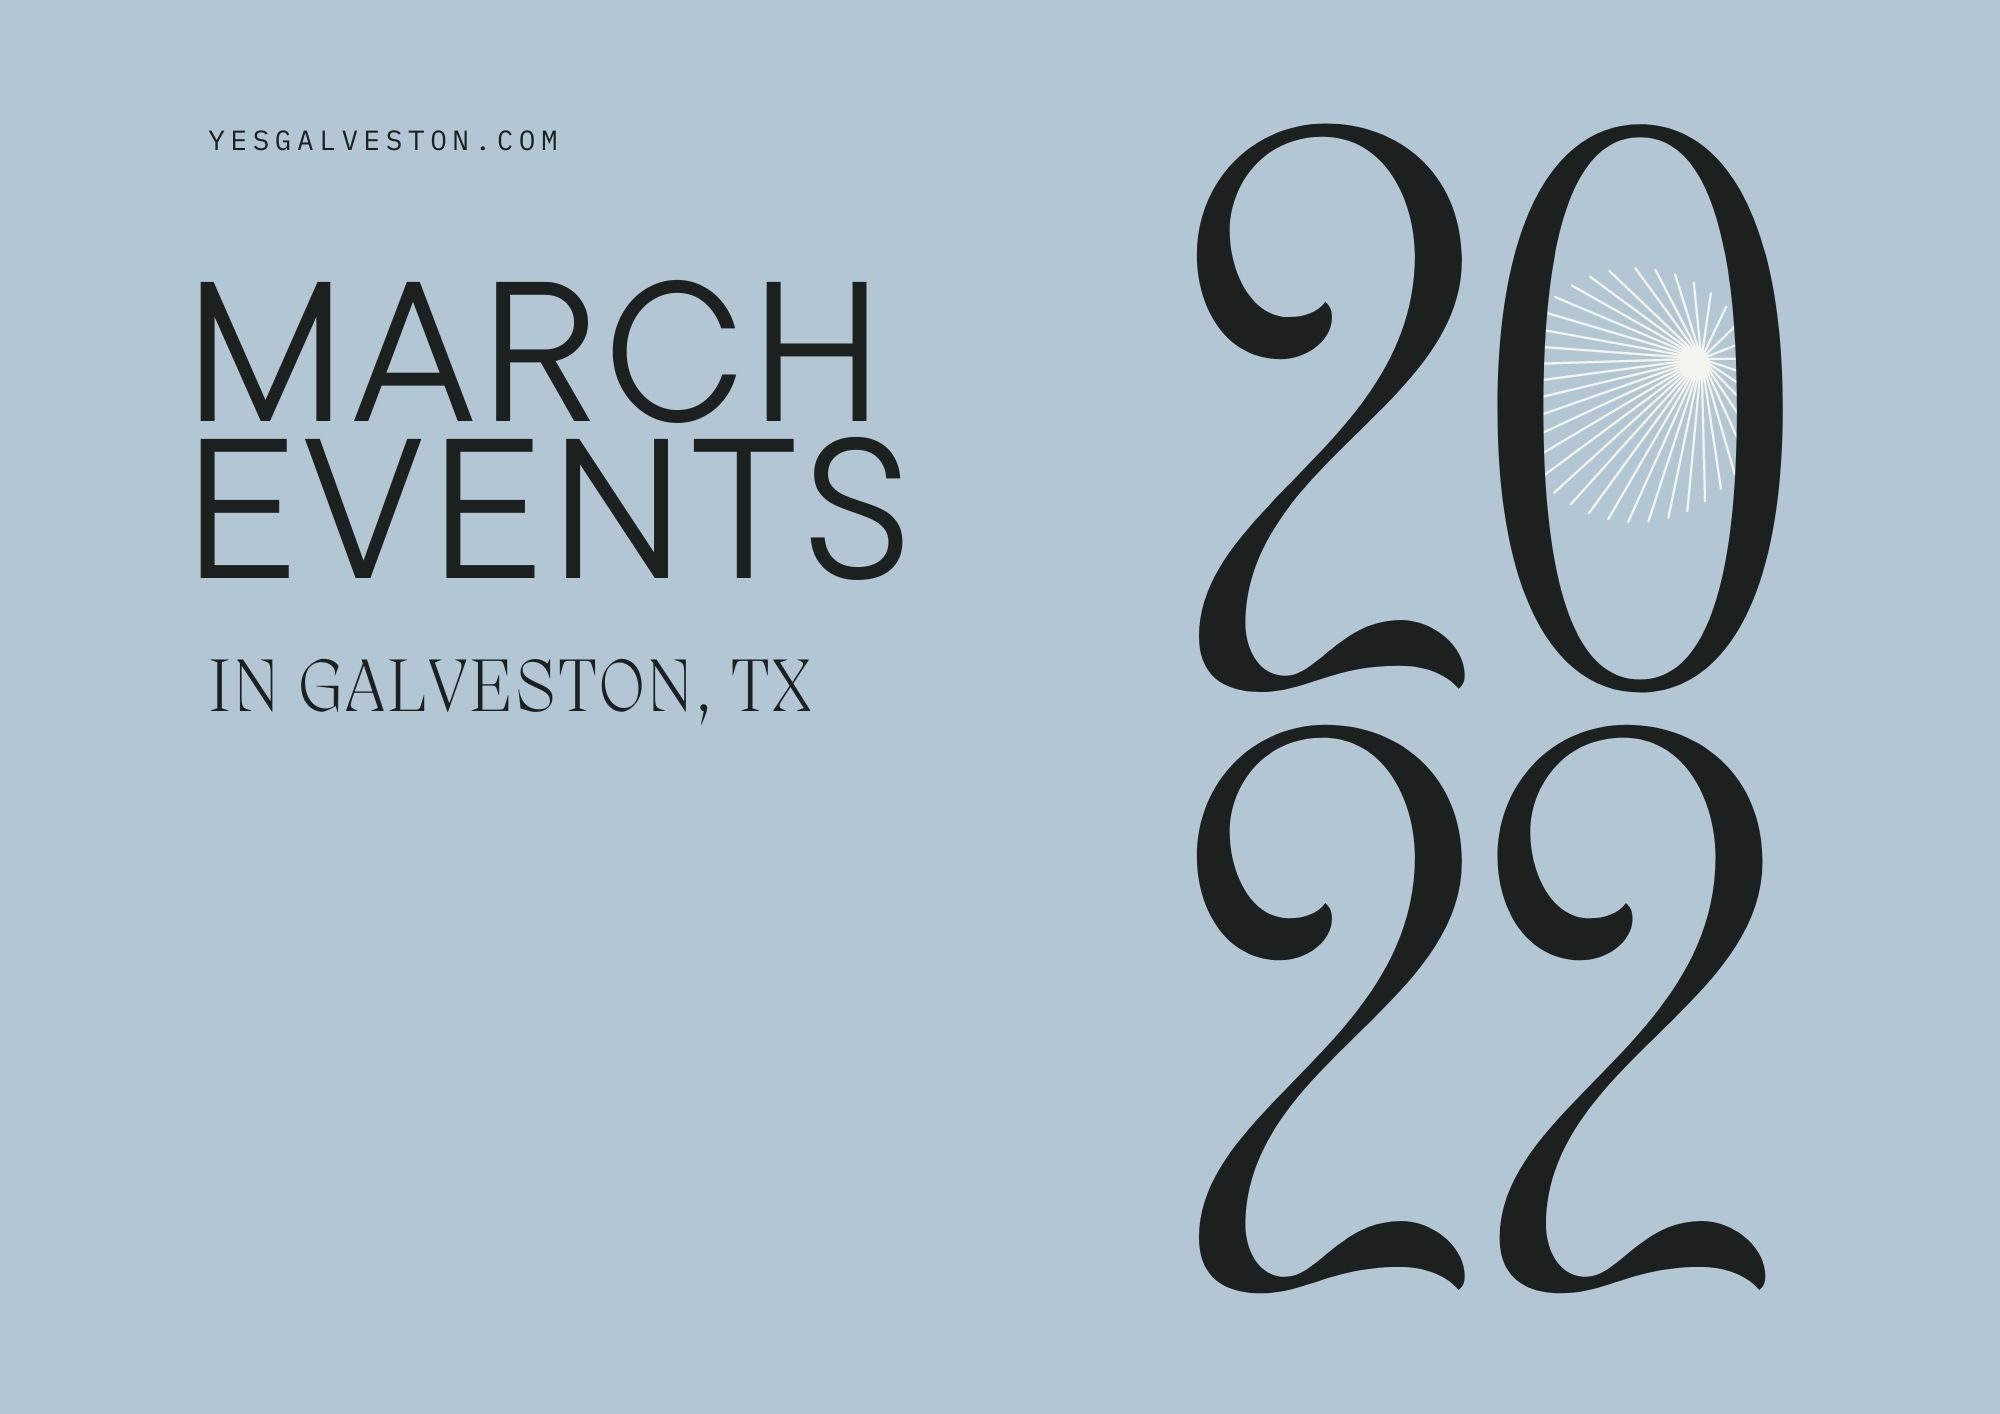 Galveston in March